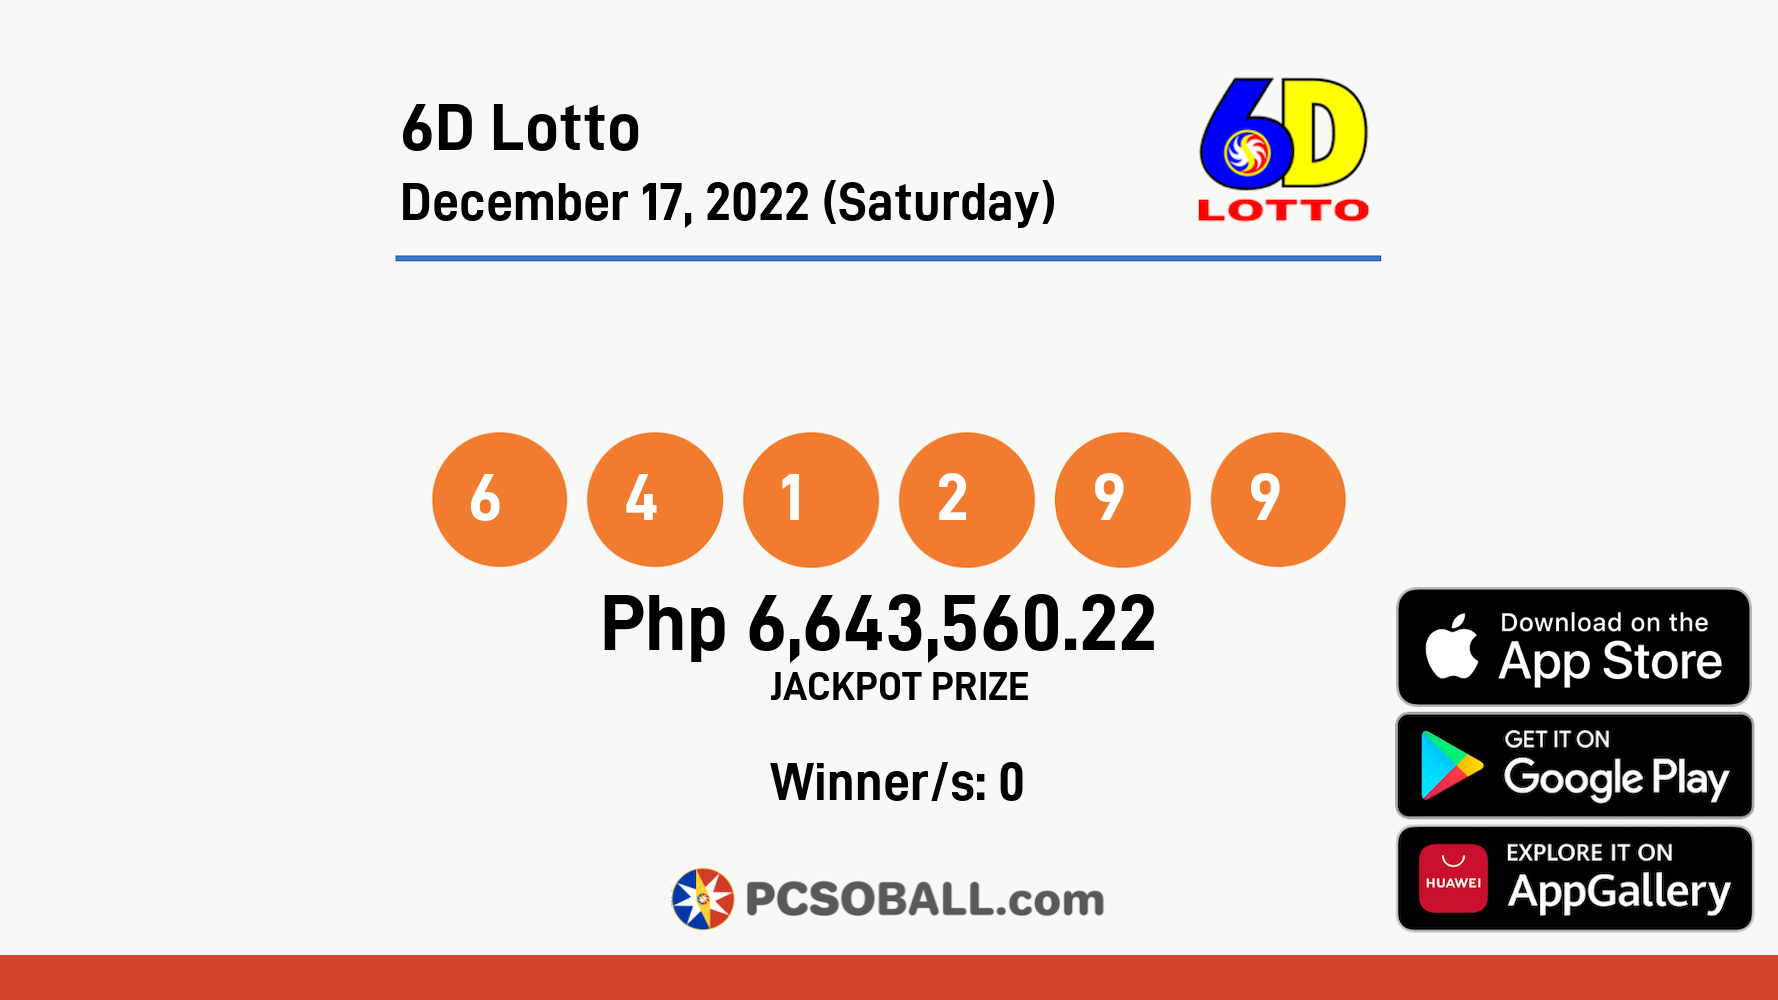 6D Lotto December 17, 2022 (Saturday) Result